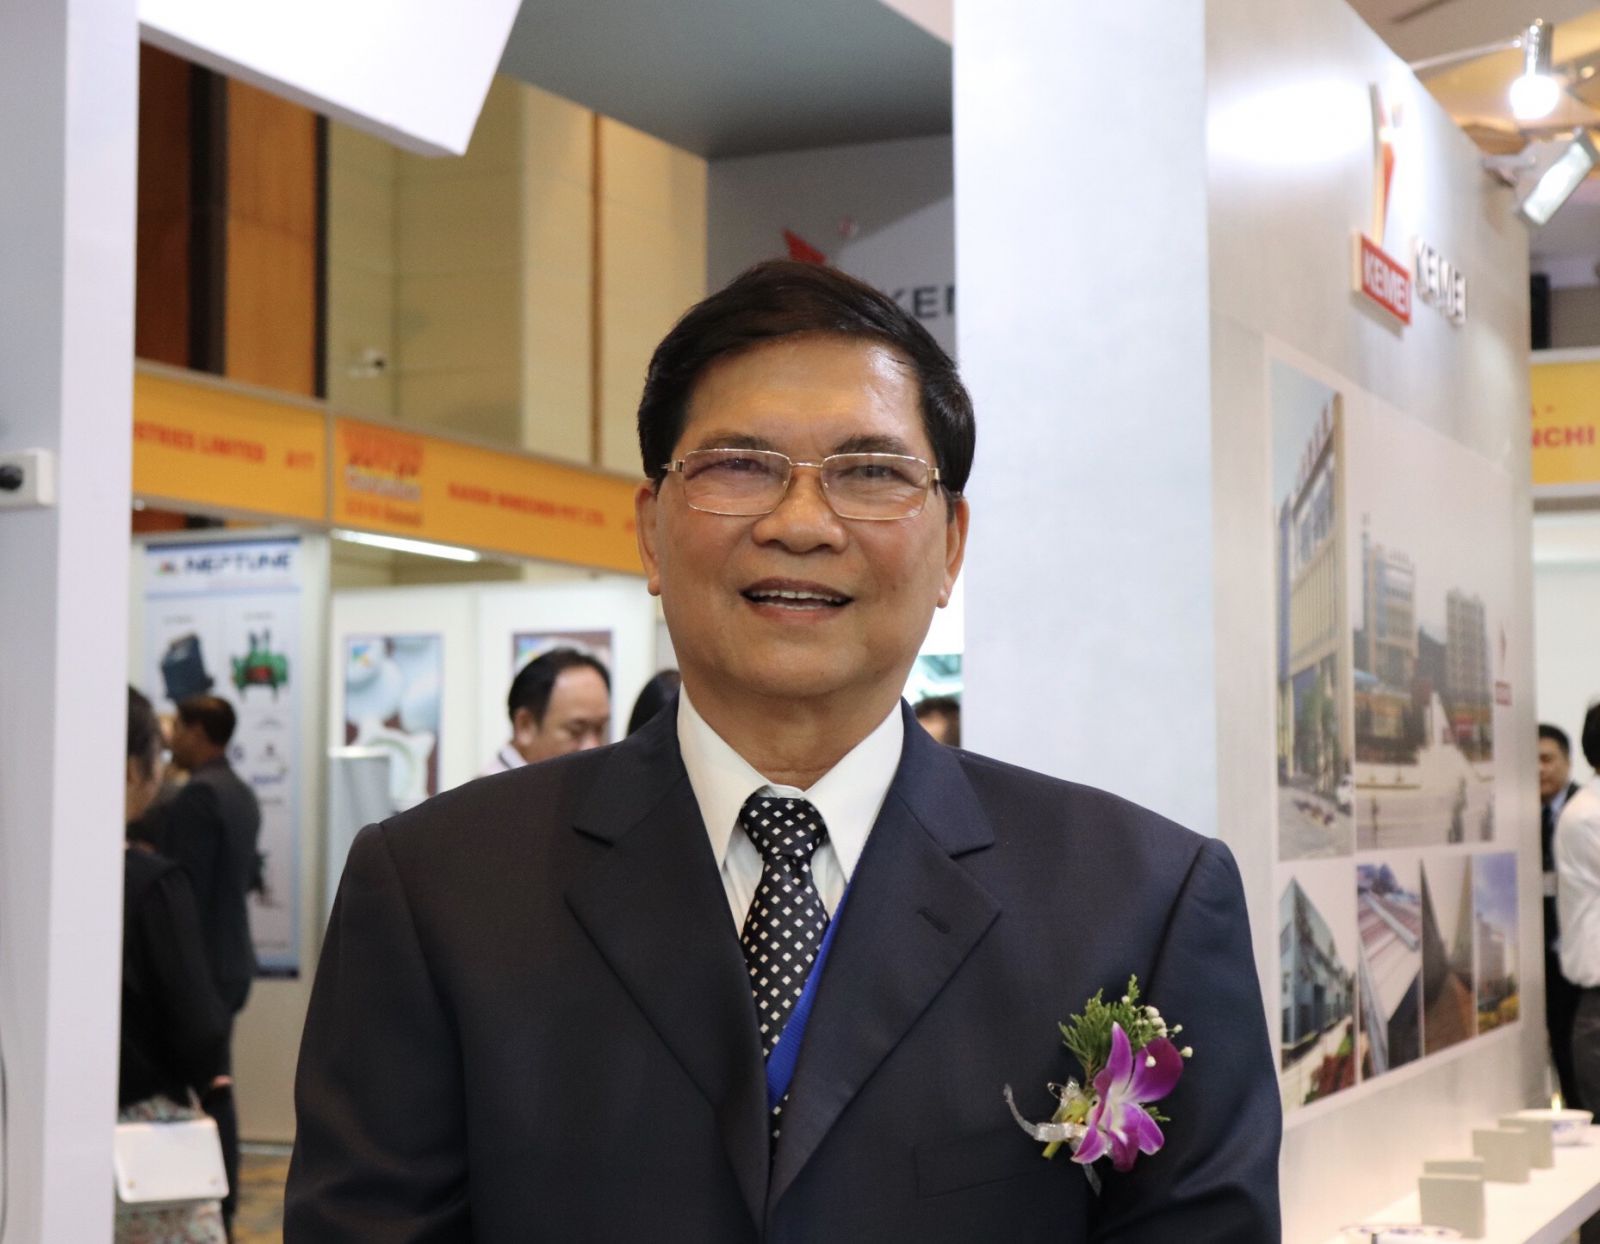 Ông Đinh Quang Huy - Chủ tịch Hiệp hội Gốm sứ xây dựng Việt Nam tin tưởng “Vietnam Ceramics 2018” sẽ phát huy được vai trò làm cầu nối giữa các doanh nghiệp trong nước và quốc tế